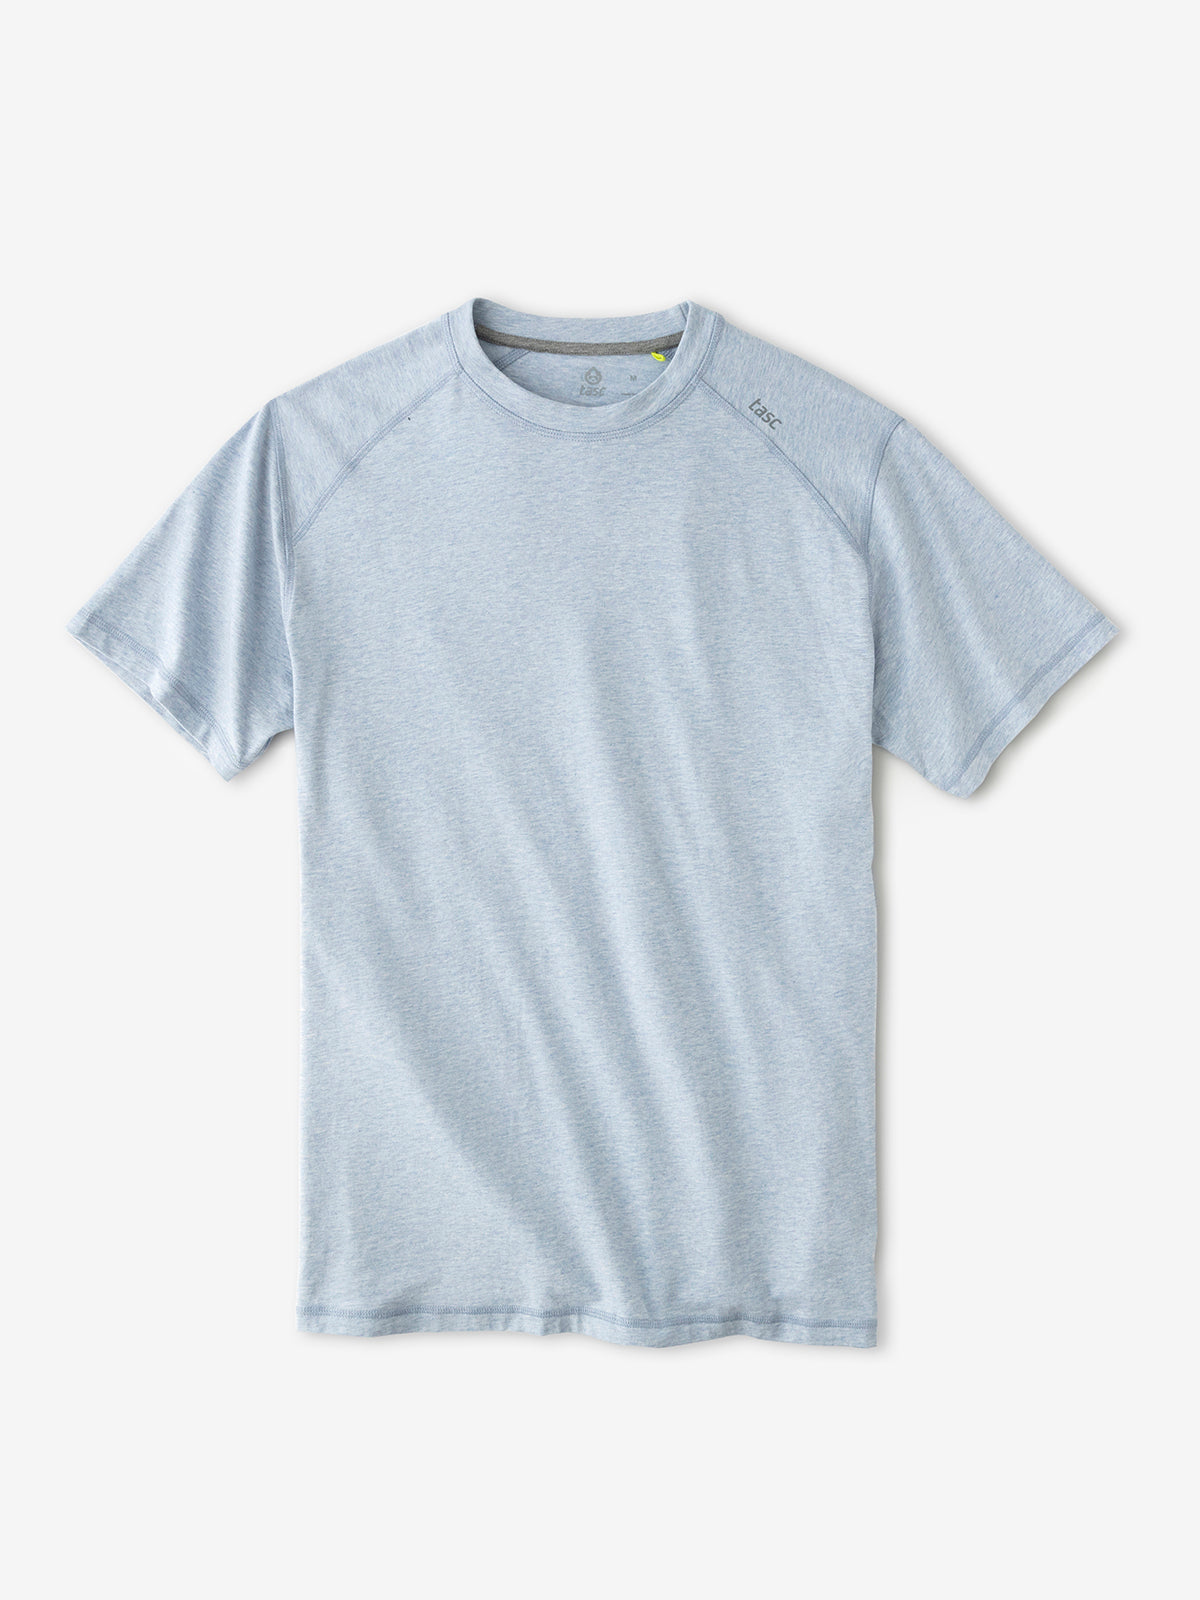 Tasc Men's Carrollton Fitness T-Shirt Apparel Tasc Cloud Heather-453 Small 